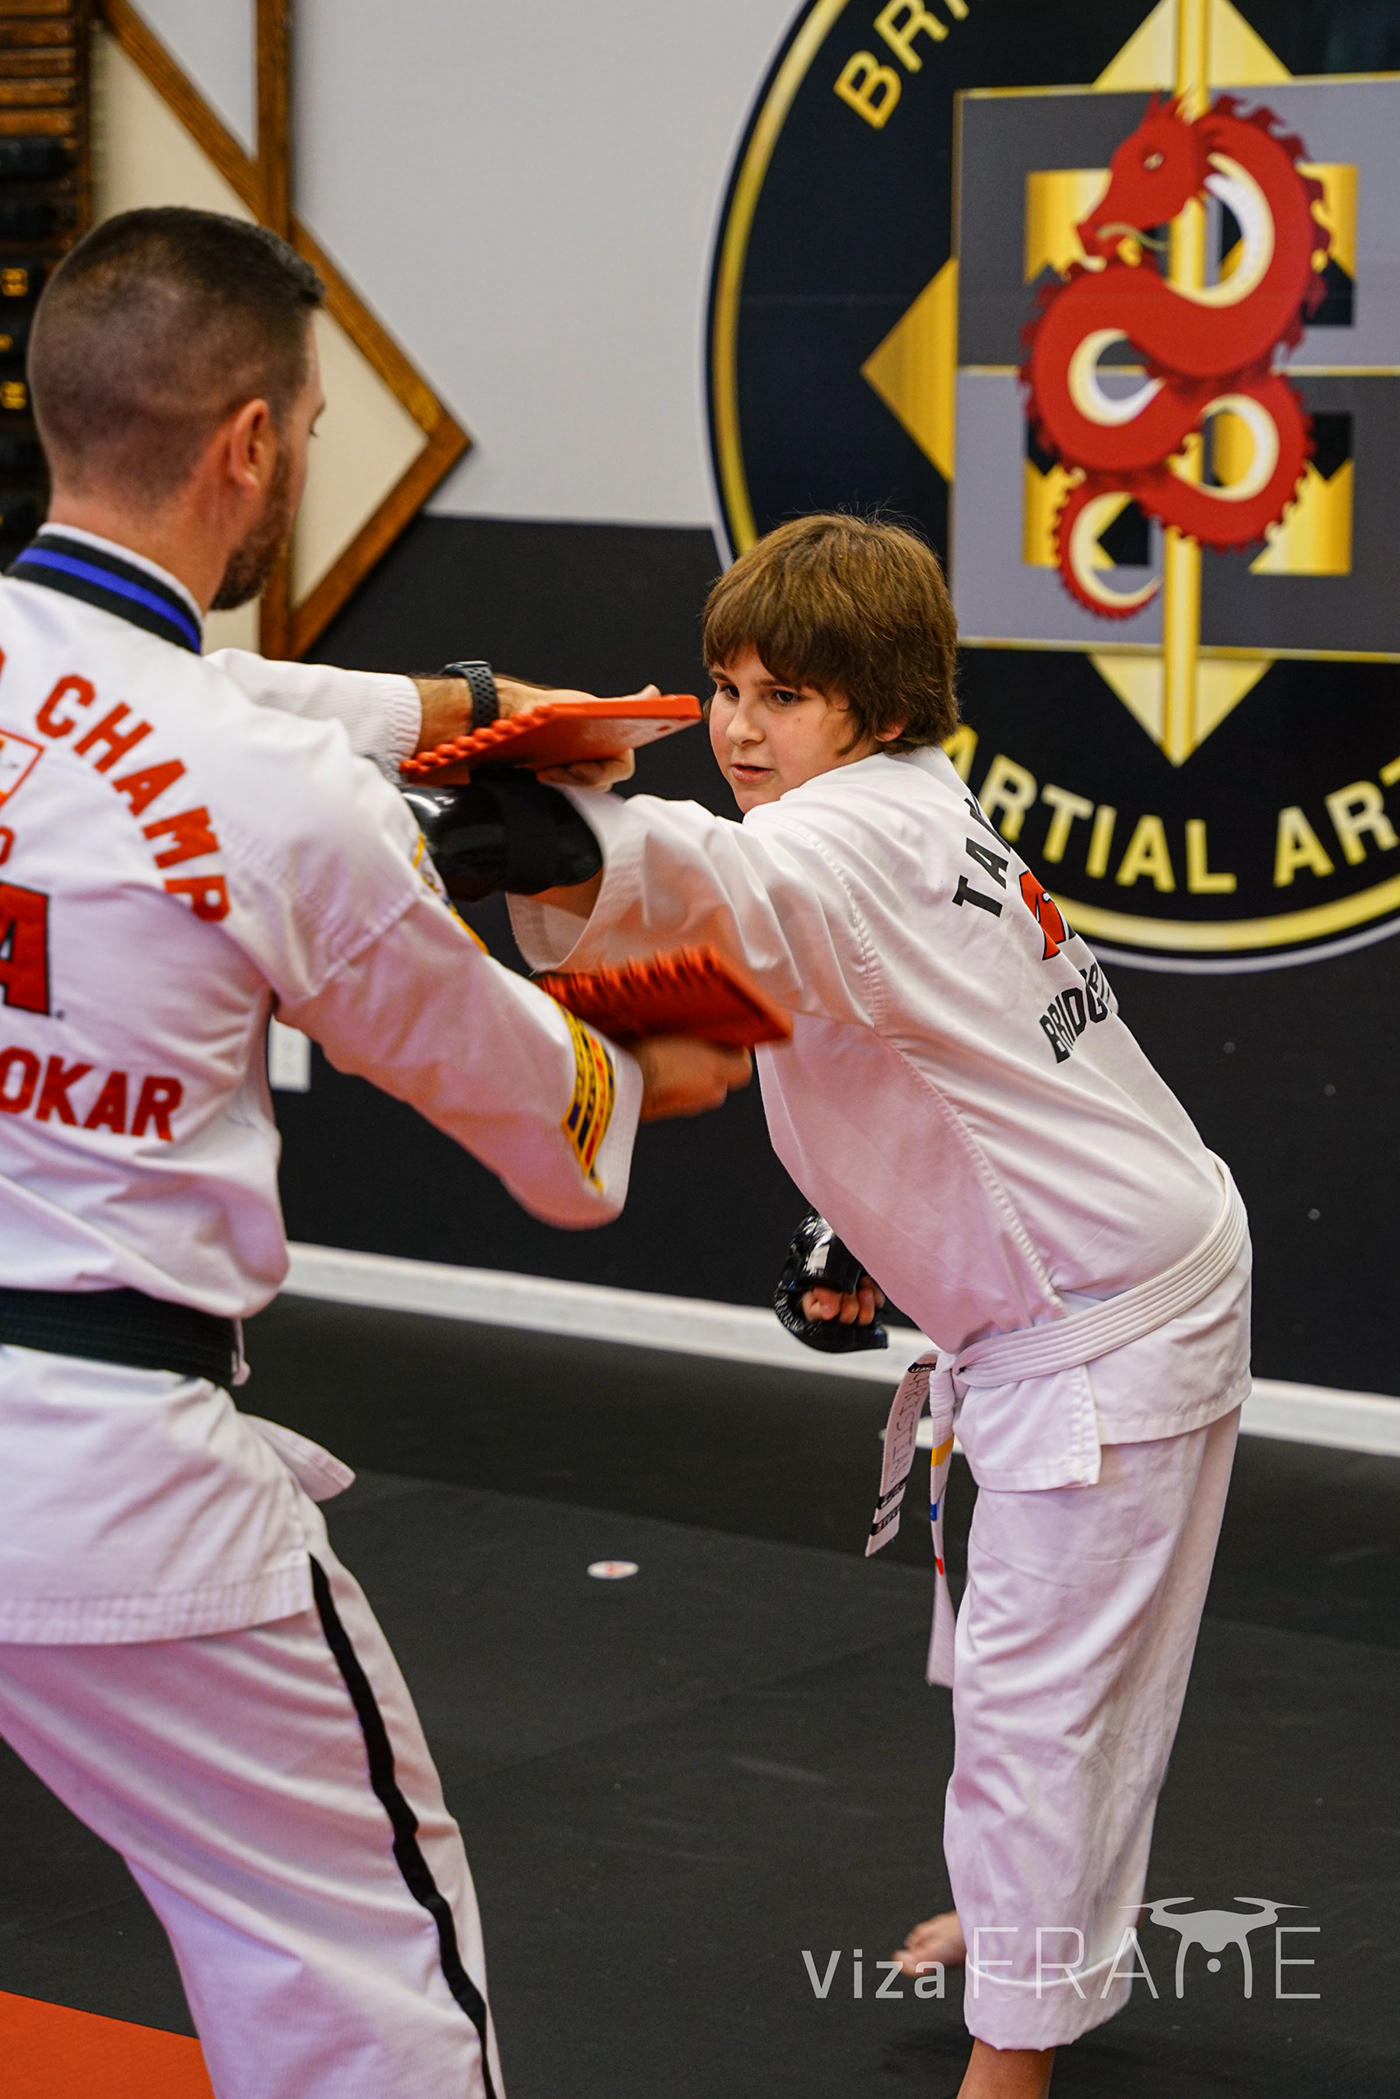 Self Esteem dedication #martial arts bridgeportwv Build Character kidschallenge self defence